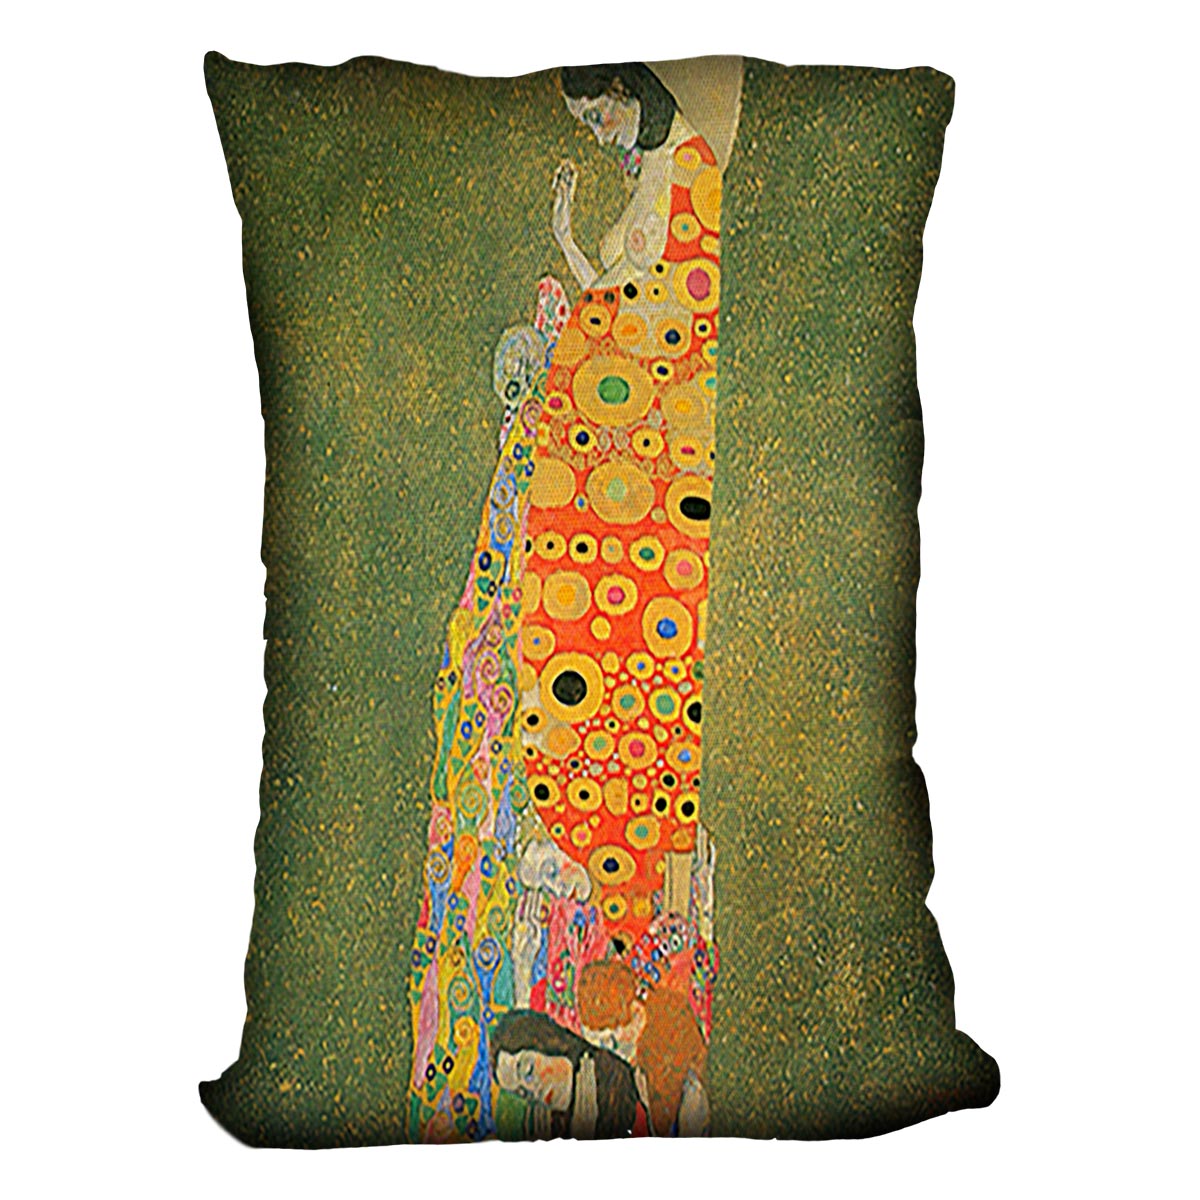 Abandoned Hope by Klimt Cushion